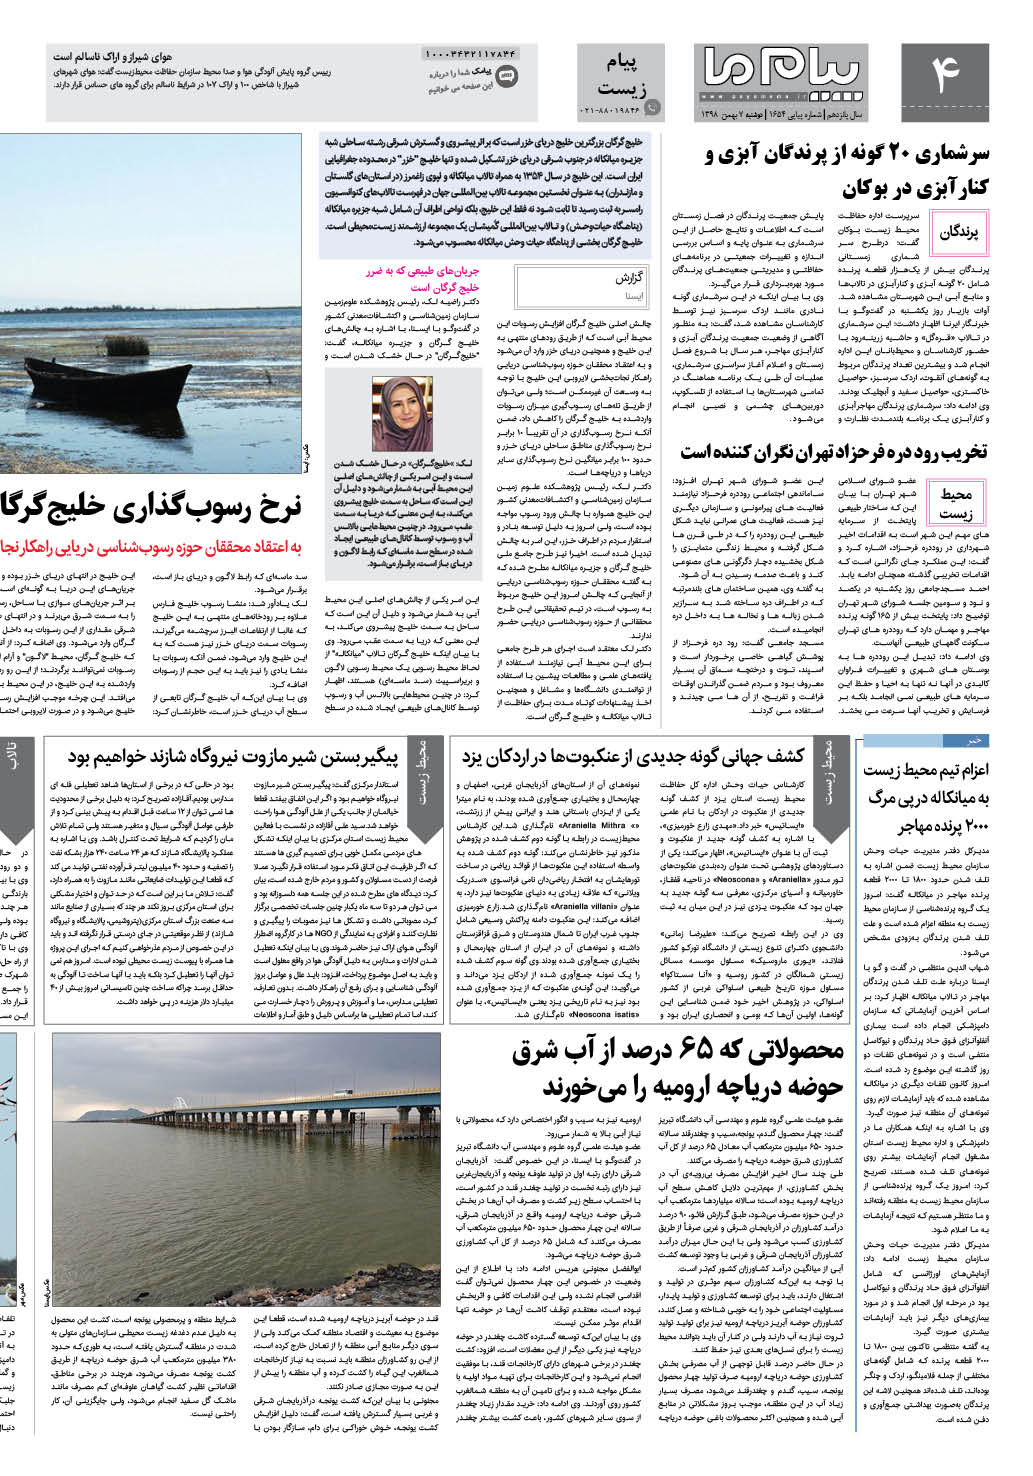 صفحه پیام زیست شماره 1654 روزنامه پیام ما